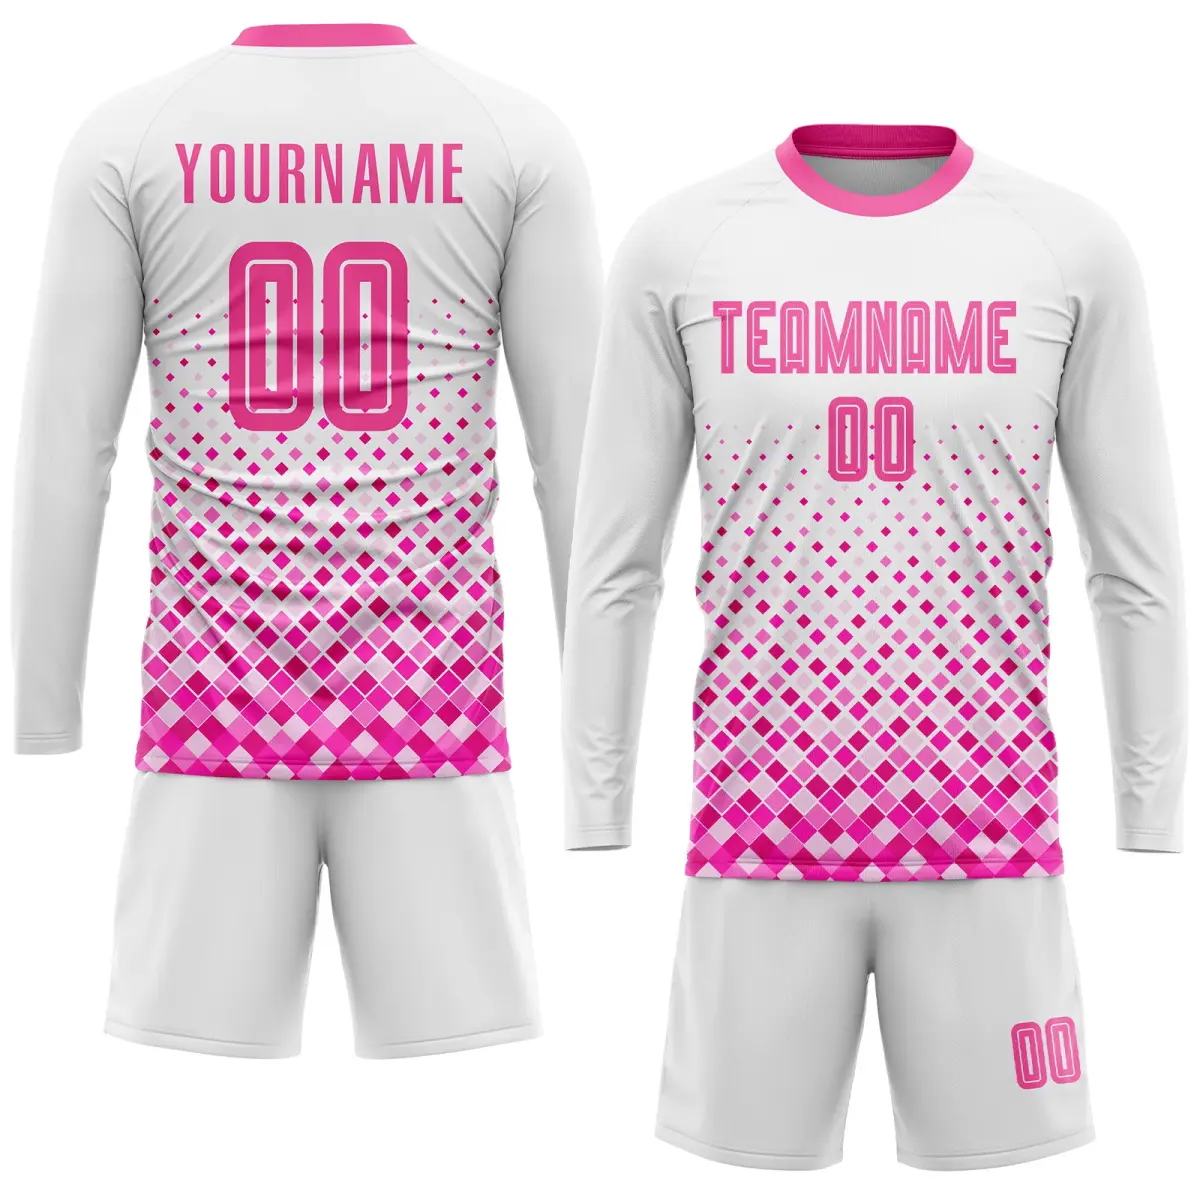 무료 사용자 정의 인쇄 로고 축구 팀 착용 저렴한 팀 스포츠 클럽 최신 축구 저지 디자인 스포츠 유니폼